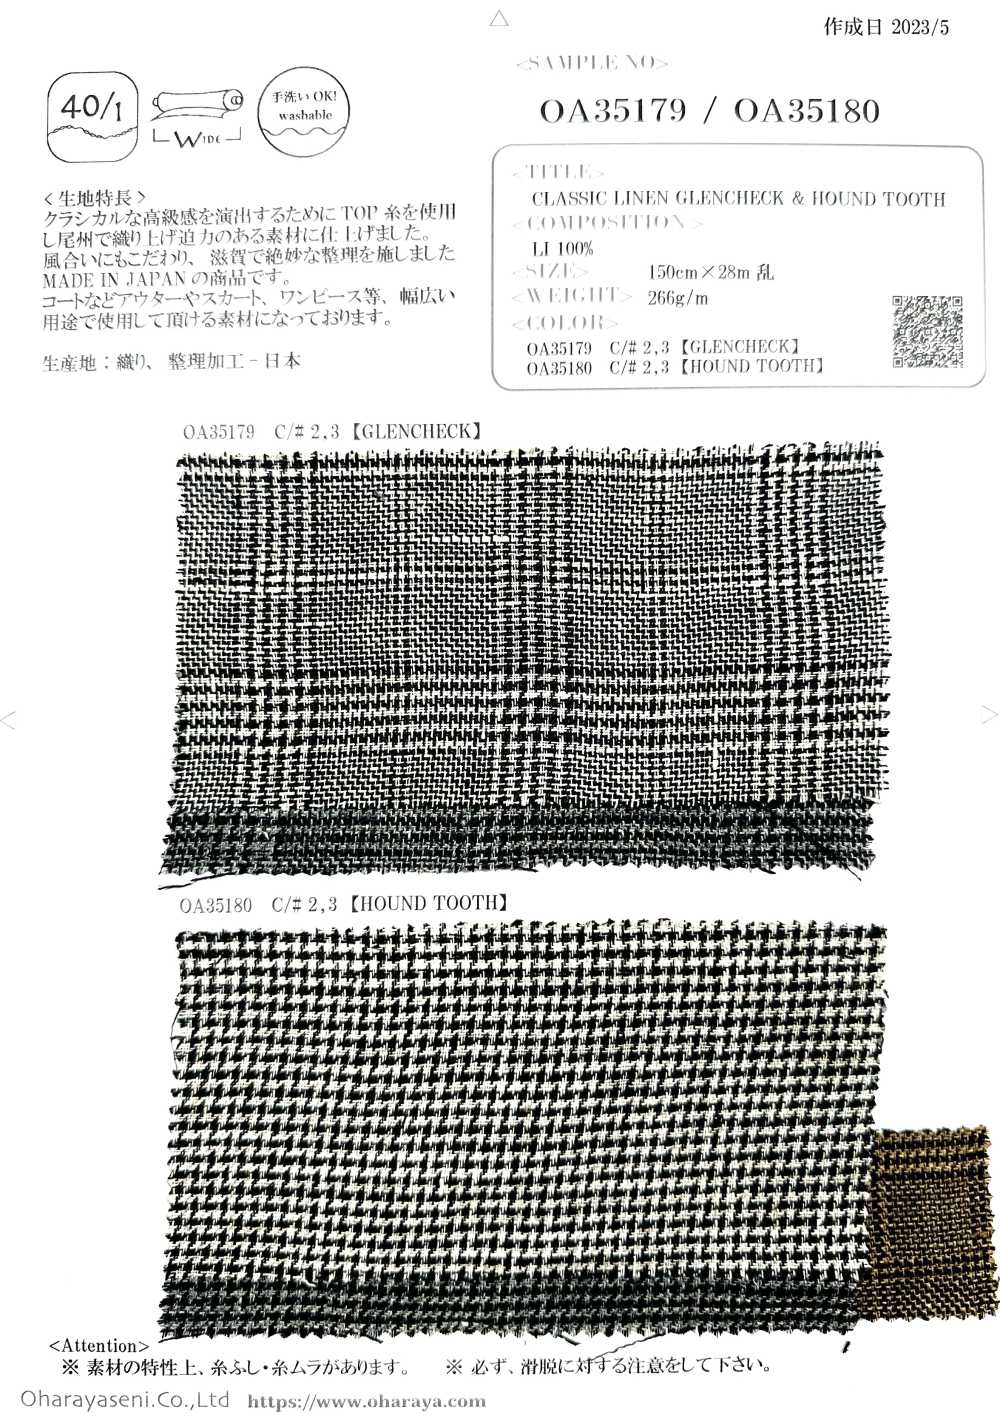 OA35180 CLÁSICO LINO CUADROS GLEN Y DIENTE DE GABUESO[Fabrica Textil] Oharayaseni